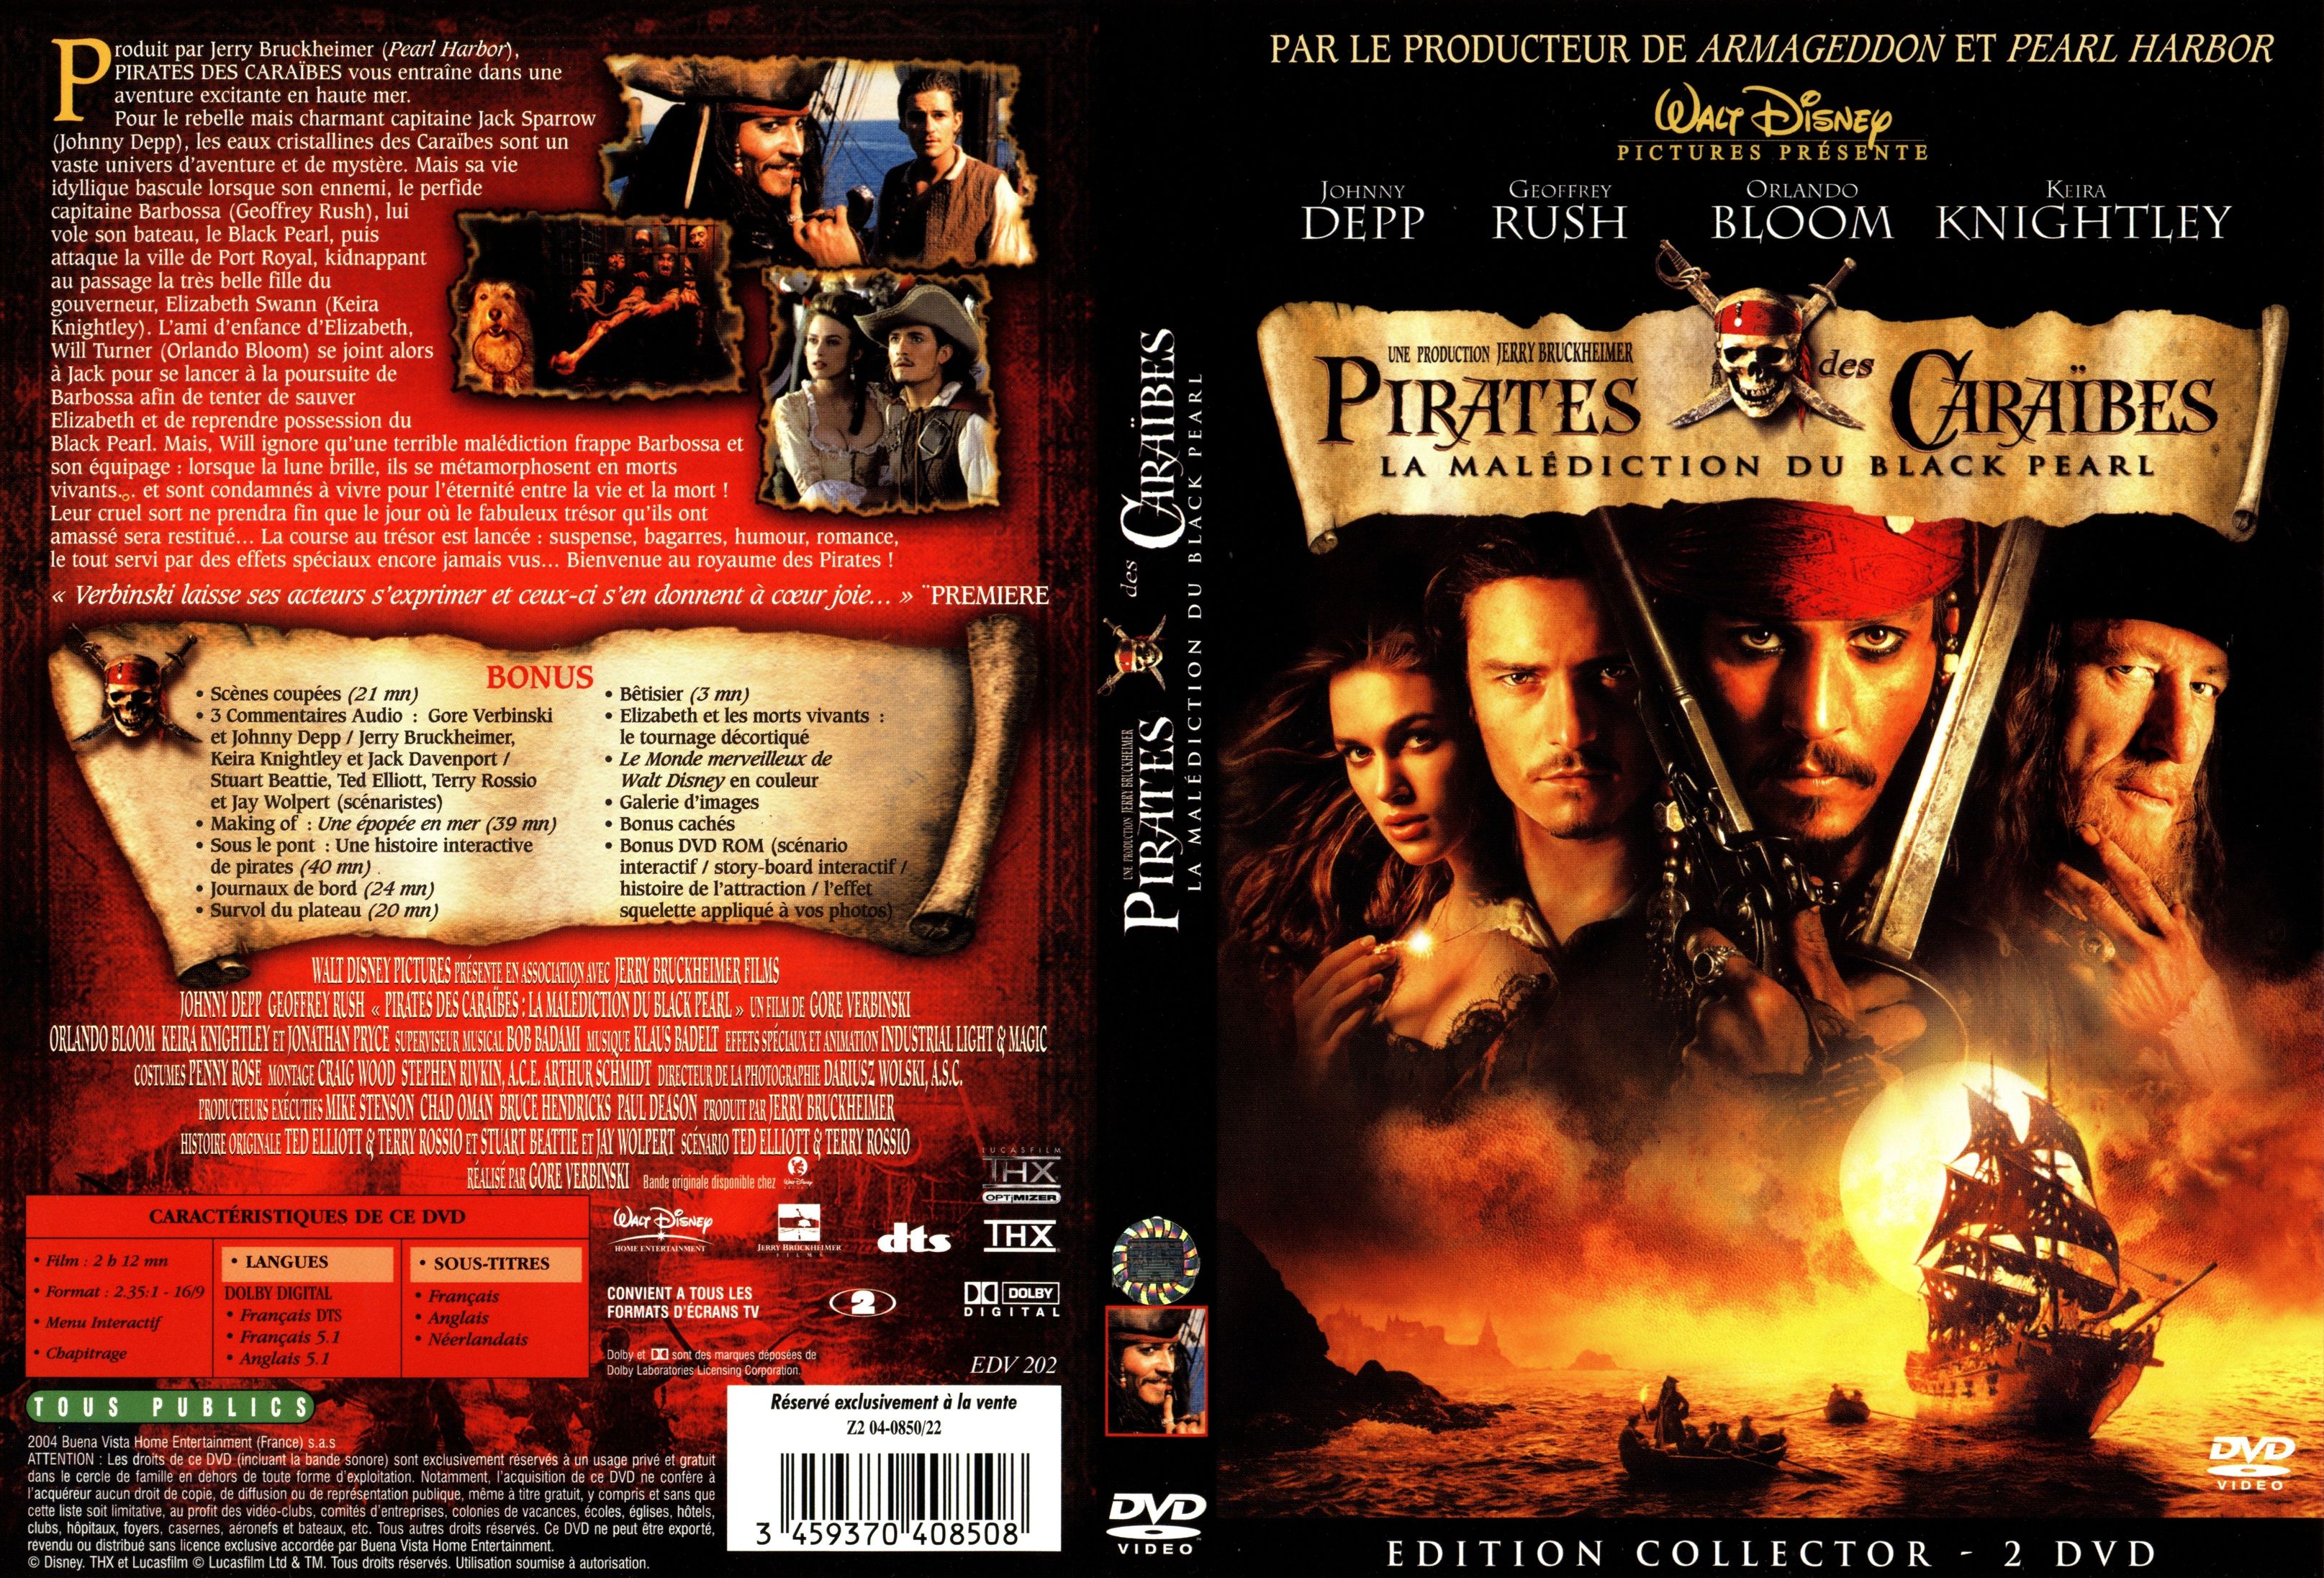 Jaquette DVD Pirates des caraibes